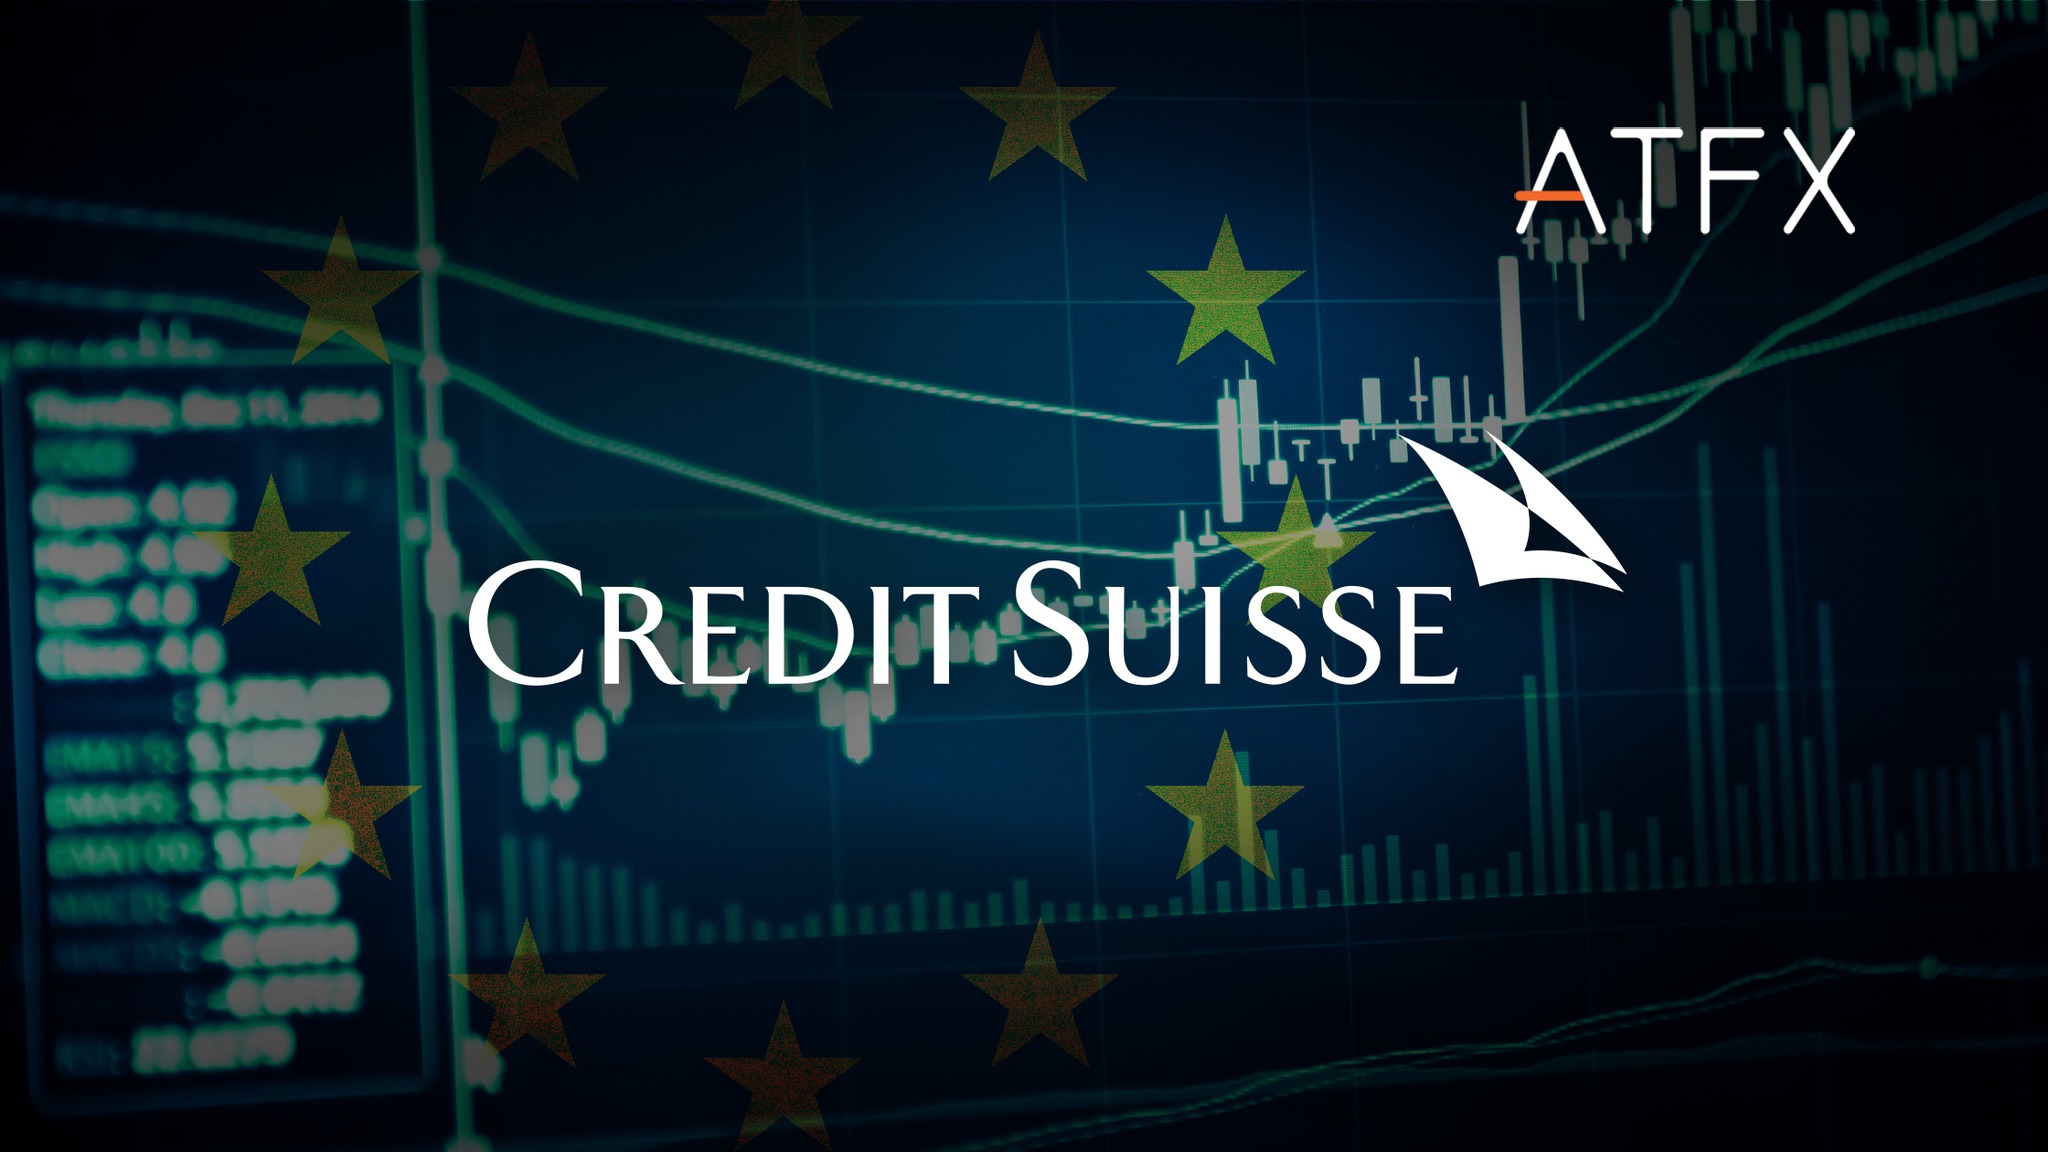 Rắc rối có thể xảy ra cho chứng khoán châu Âu với Credit Suisse - ATFX